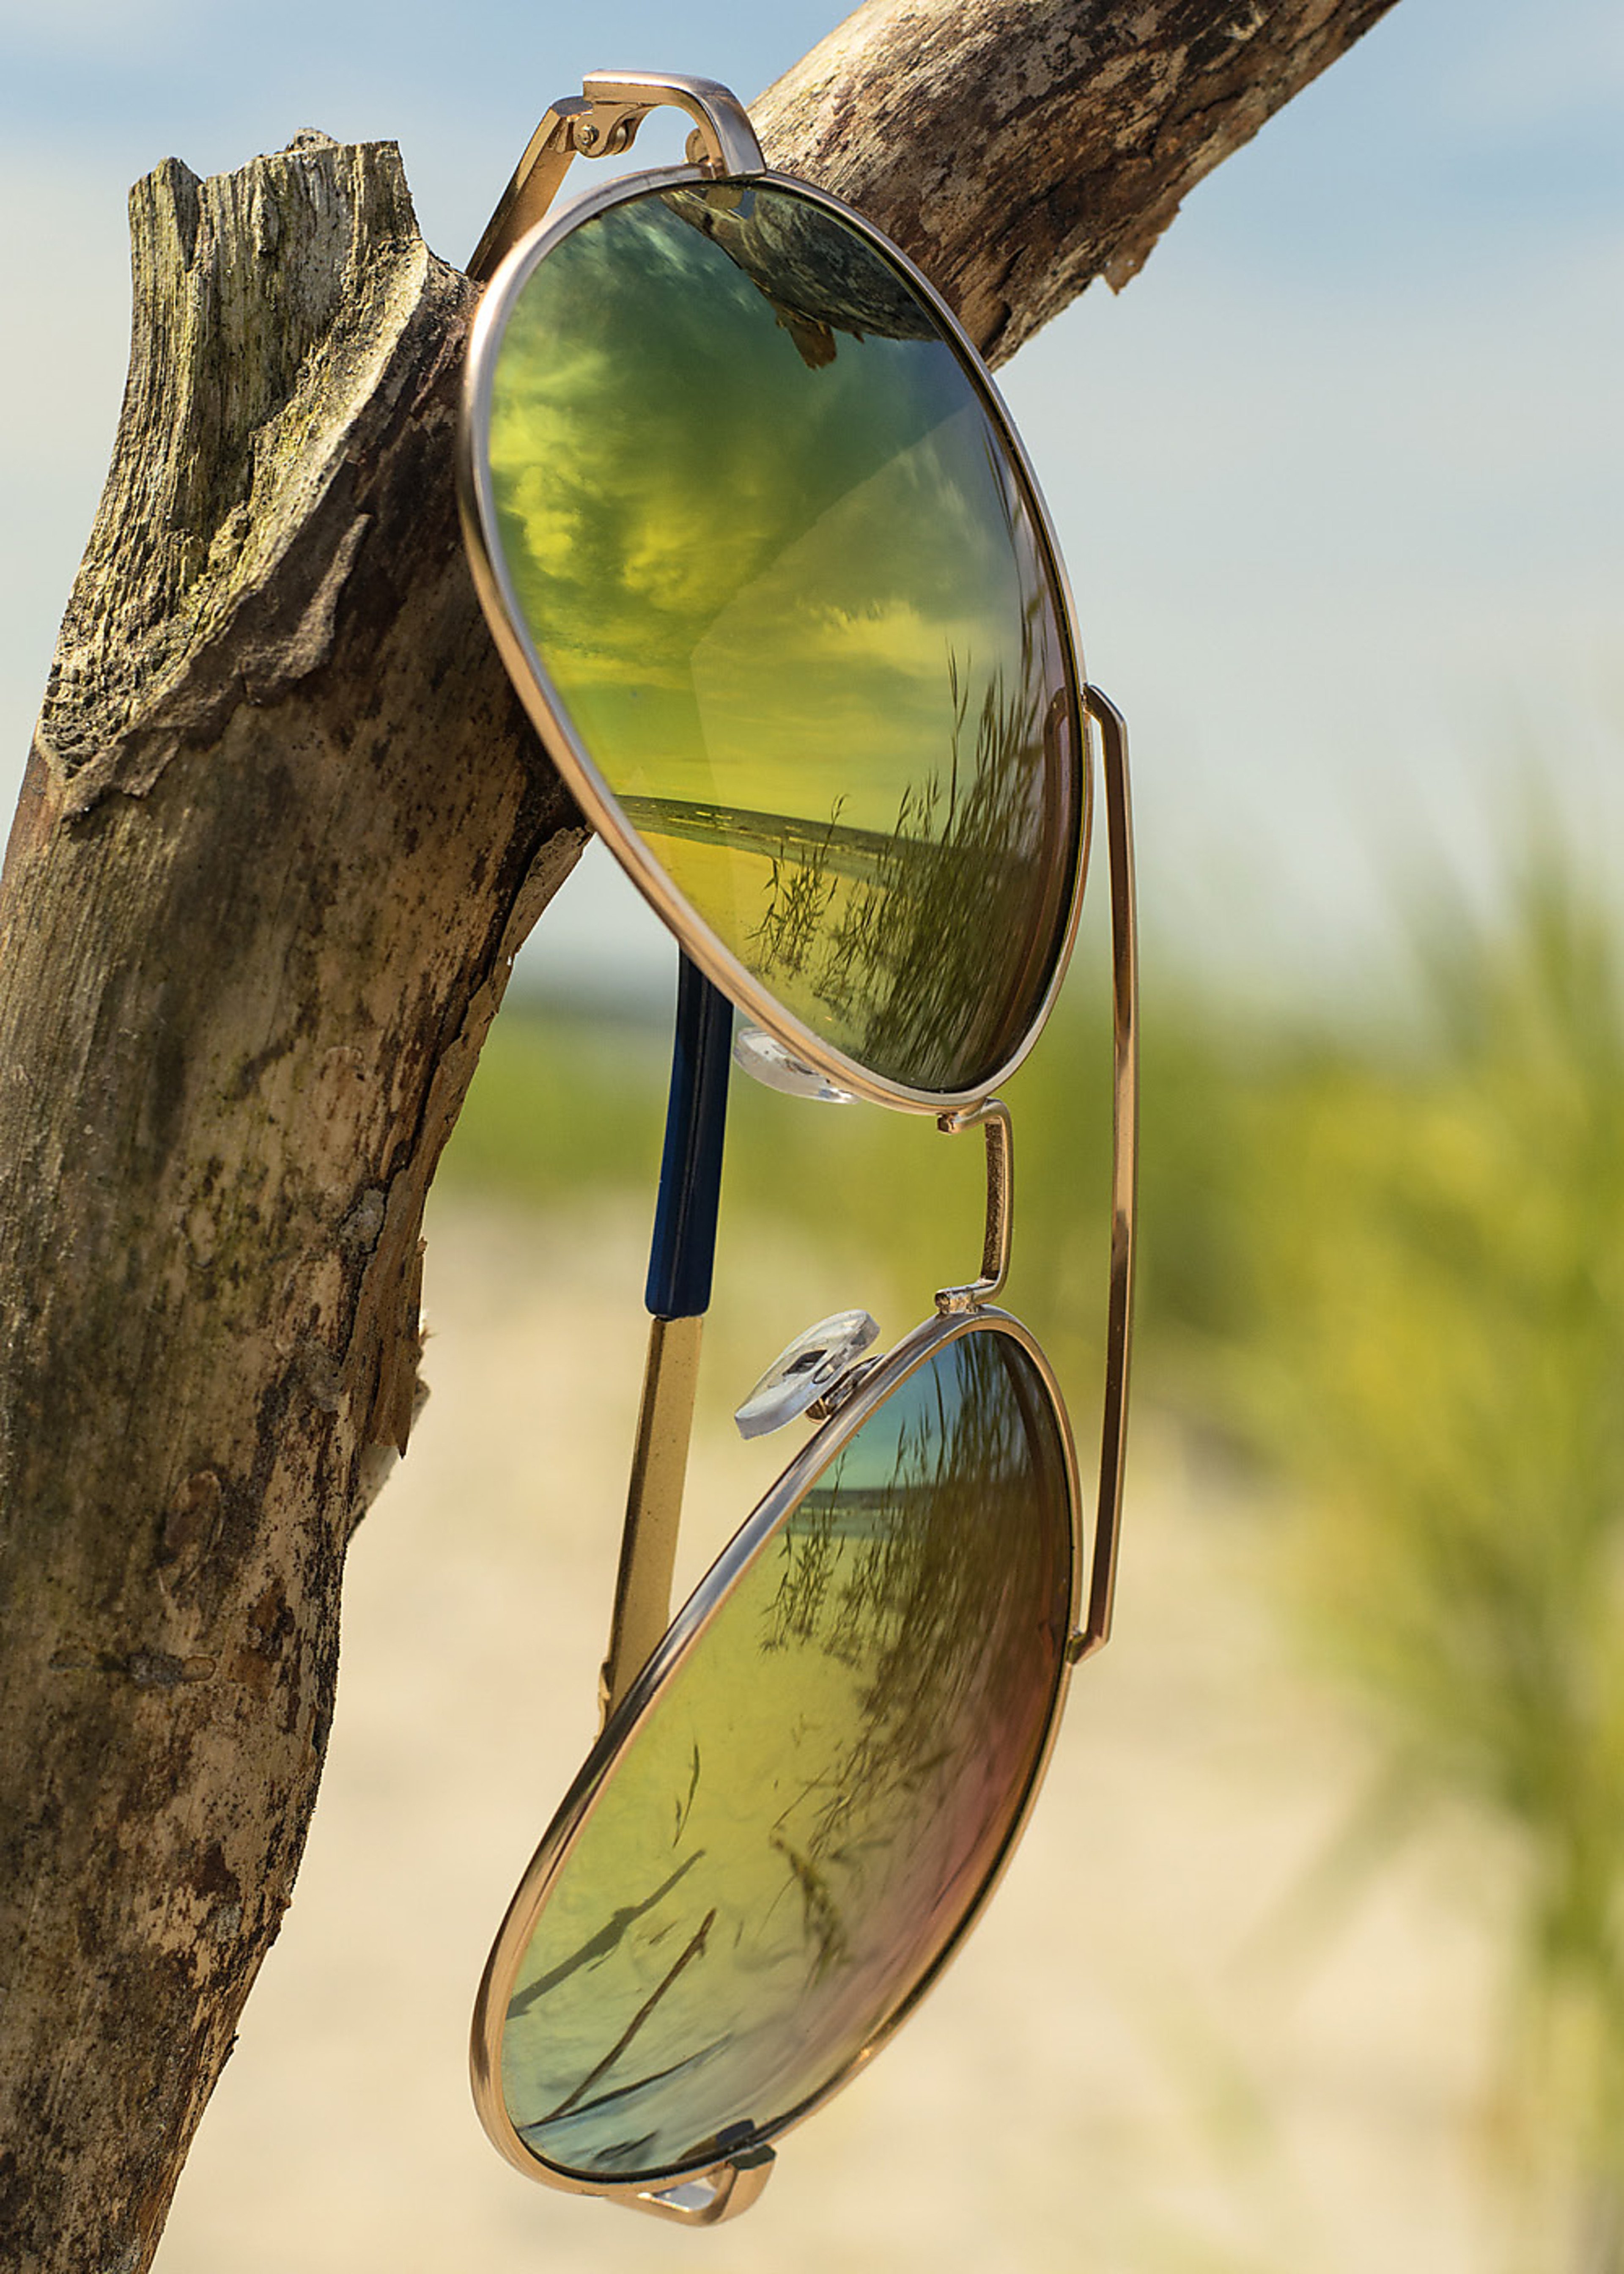 Verspiegelte Sonnenbrille: Funktionsweise und Vorteile | KIND